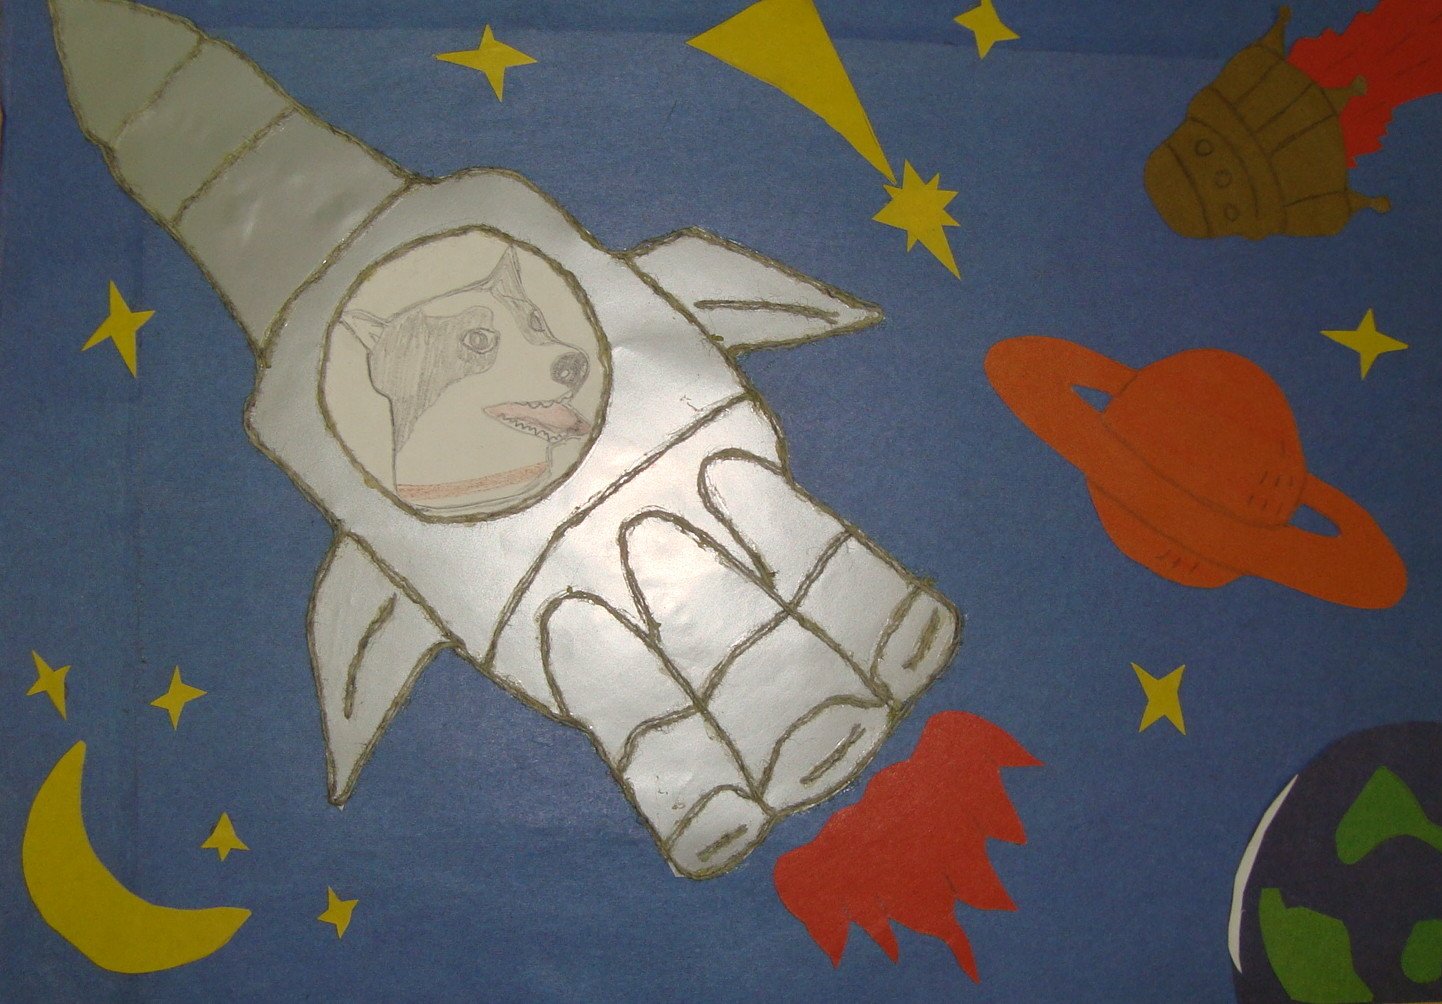 Поделки и рисунки ко дню космонавтики